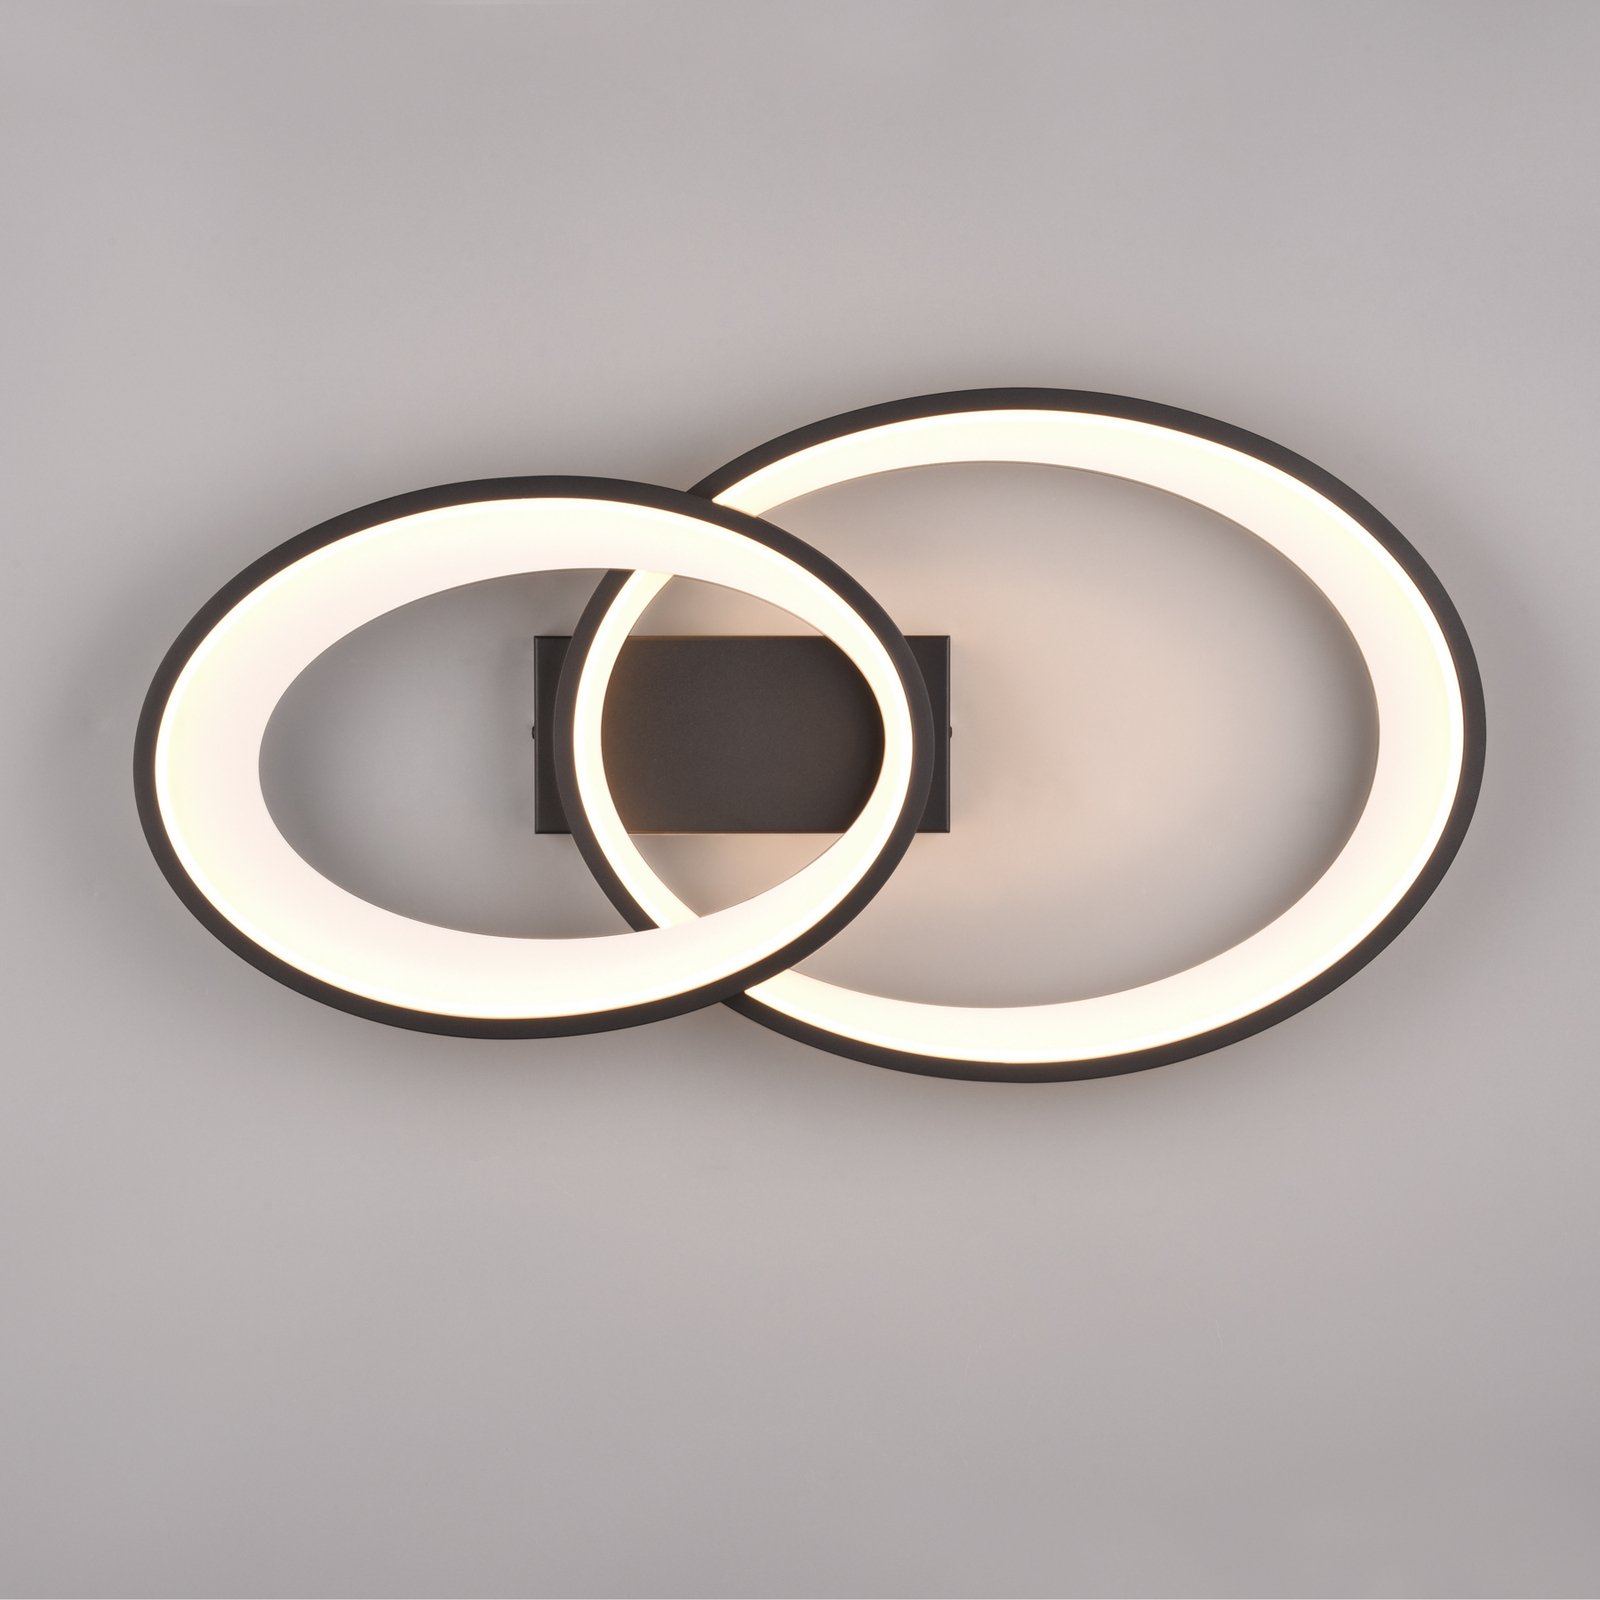 LED-Deckenleuchte Malaga mit 2 Ringen, schwarz